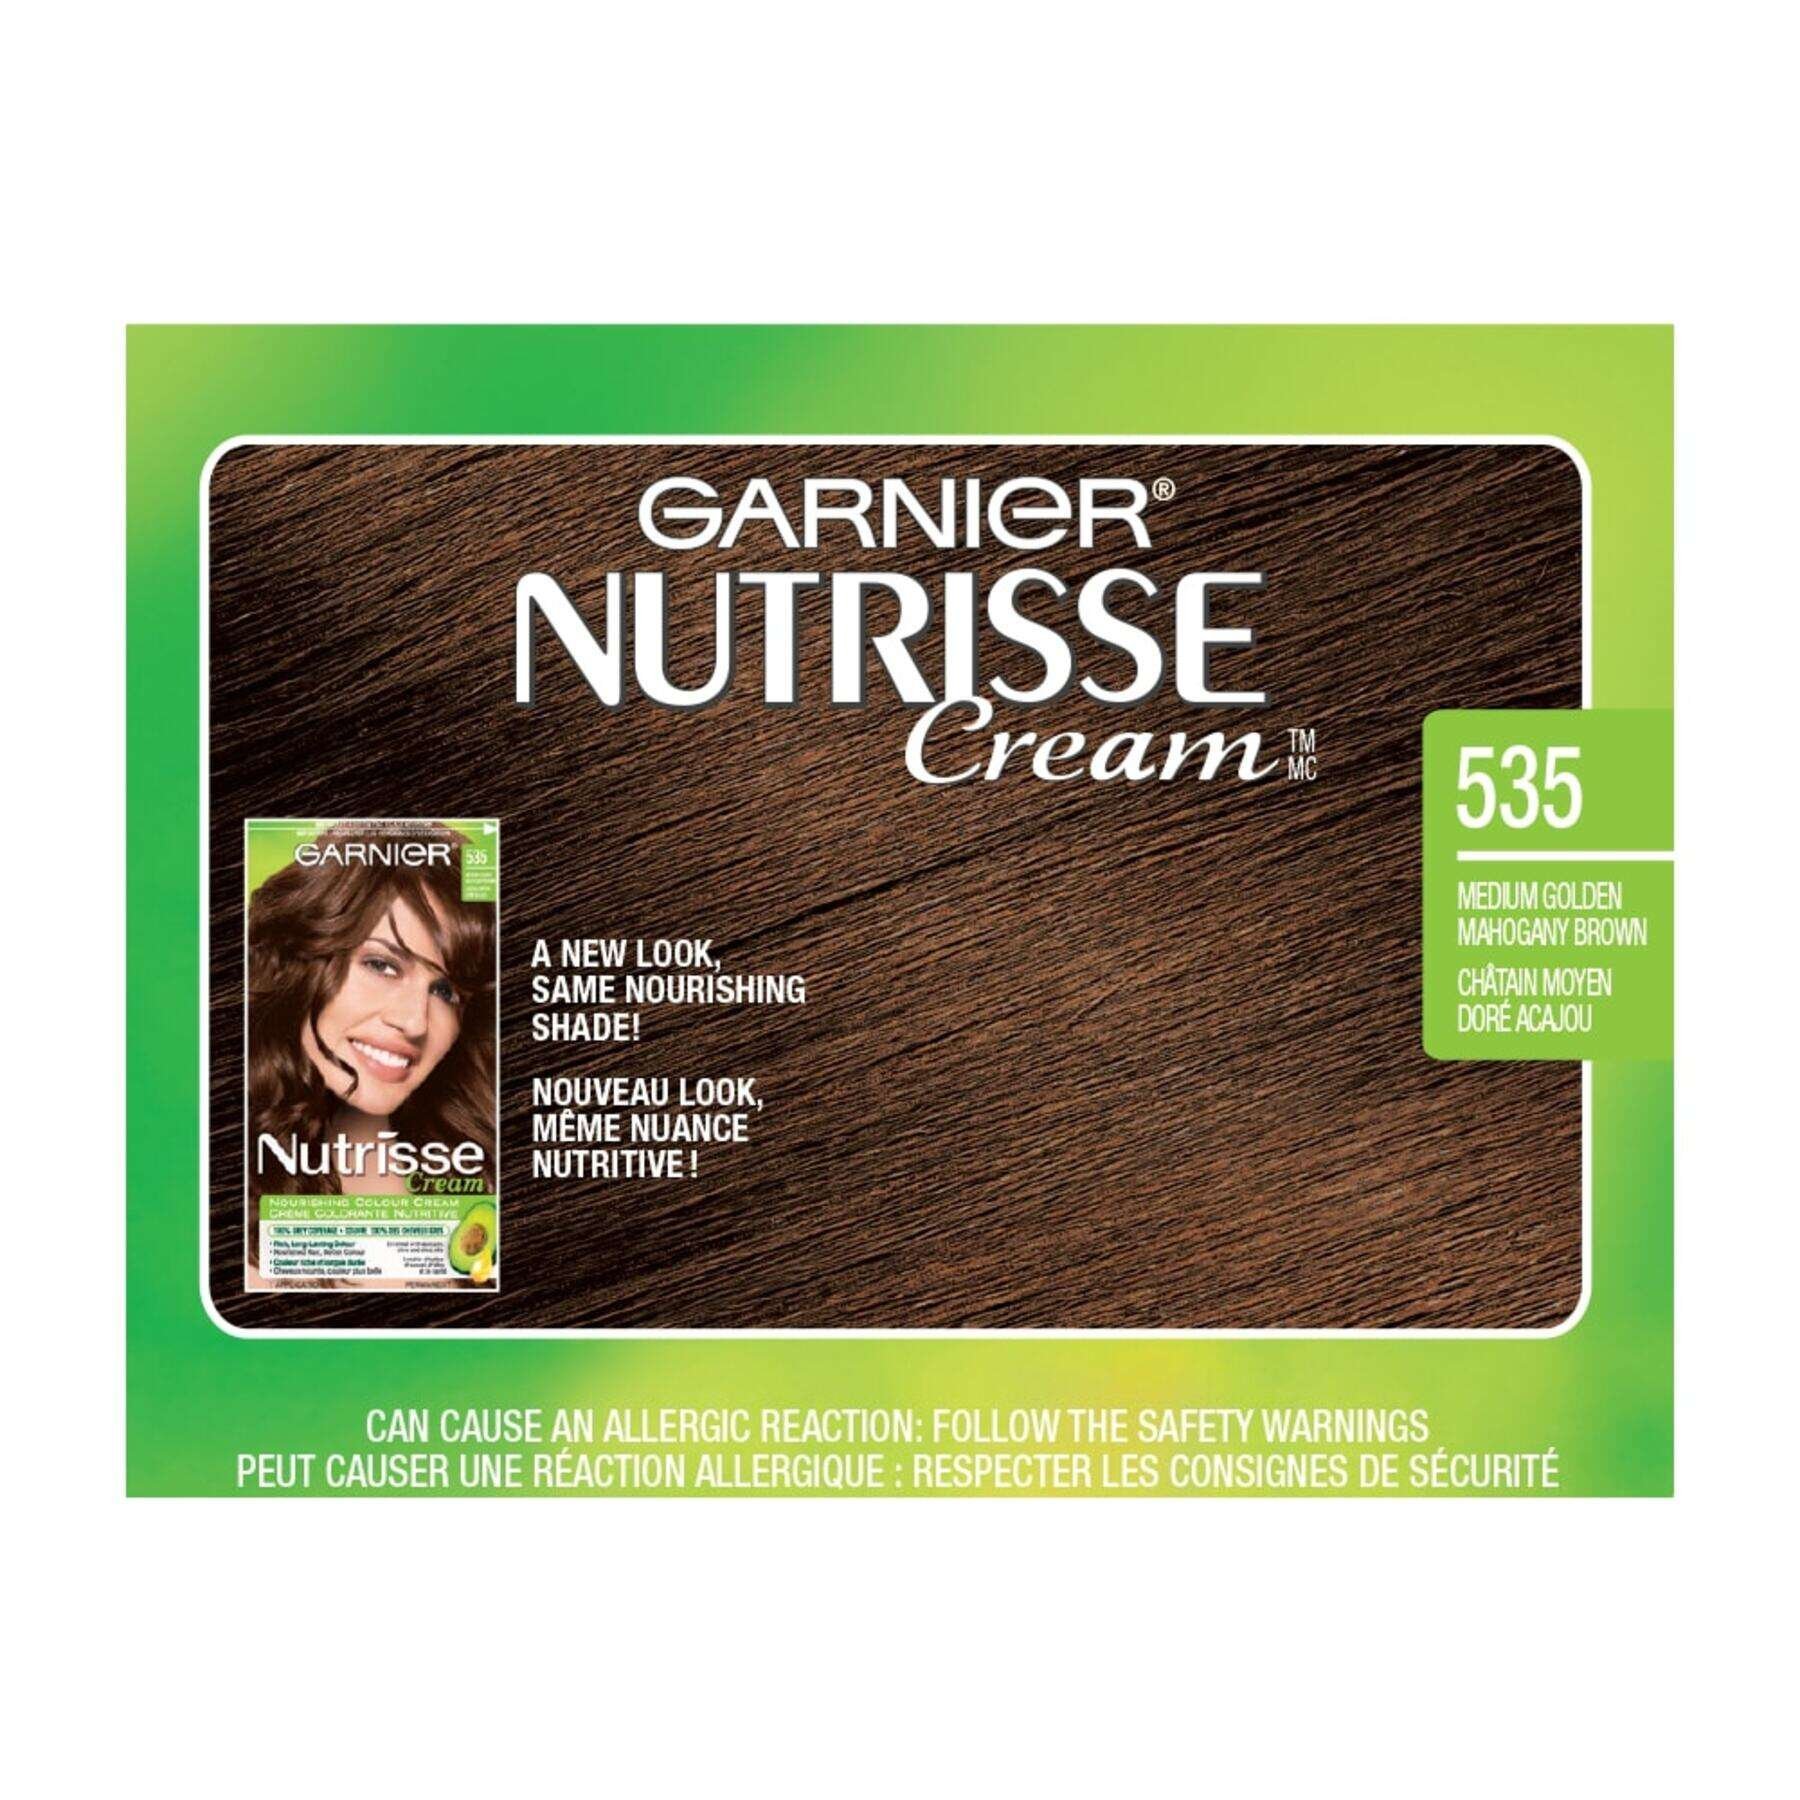 garnier hair dye nutrisse cream 535 medium golden mahogany brown 0770103447100 swatch